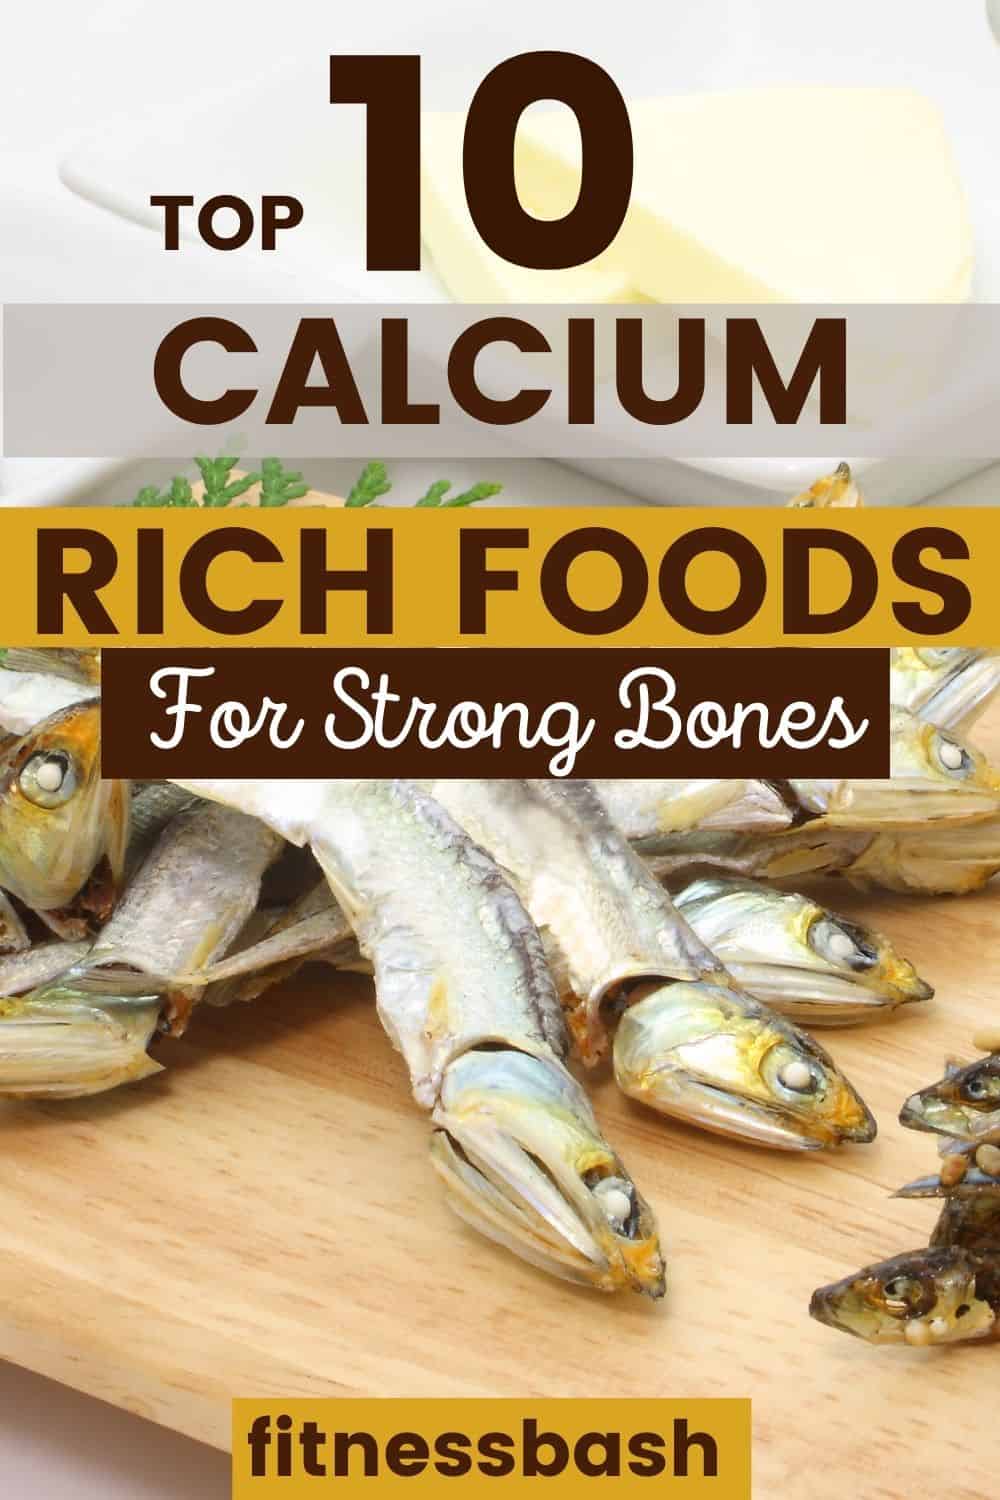 calcium-rich foods